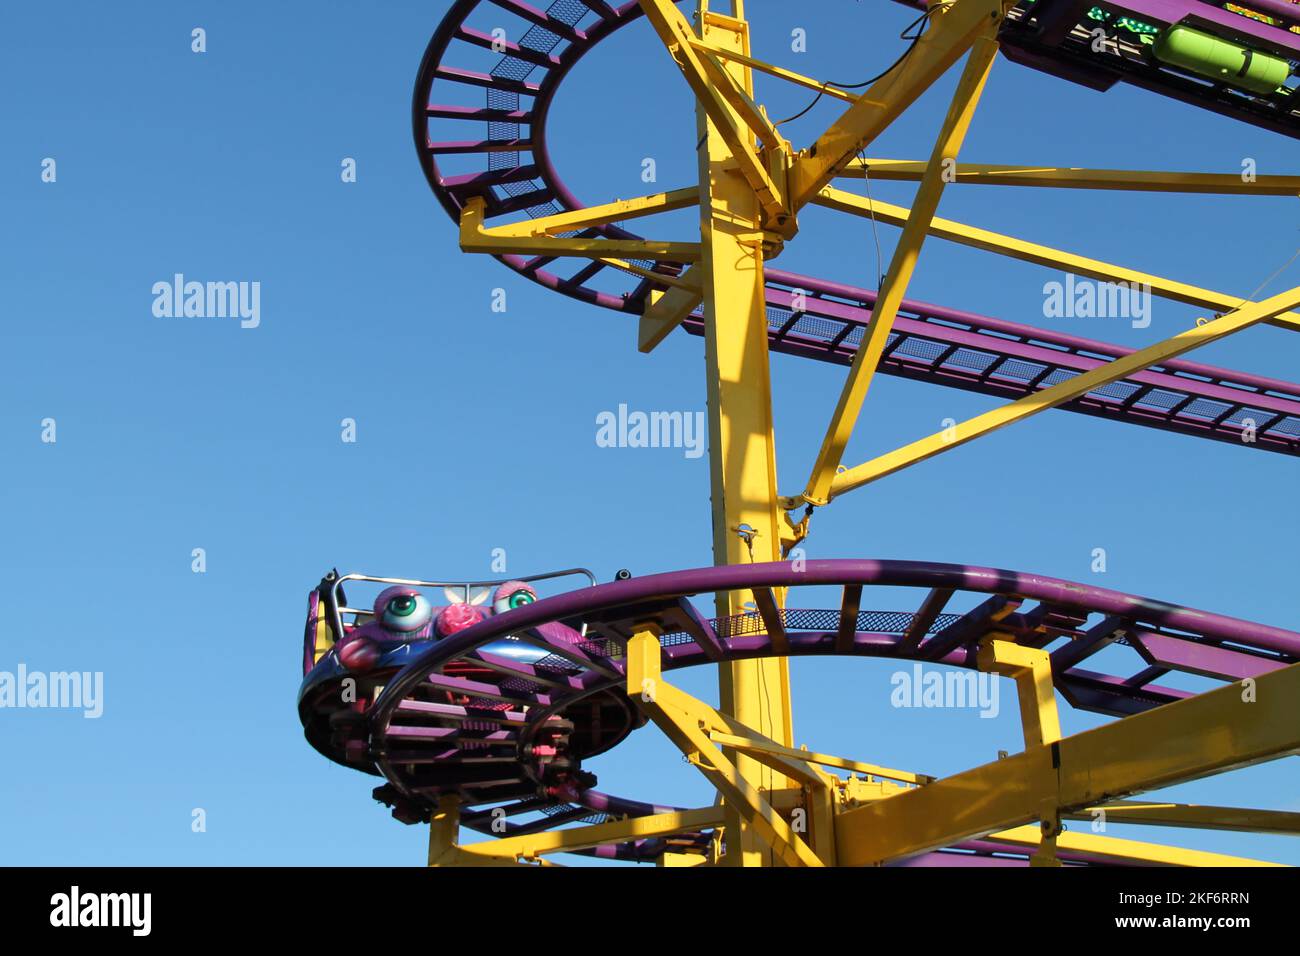 A Carriage on a High Ride at a Fun Fair Amusement Park. Stock Photo